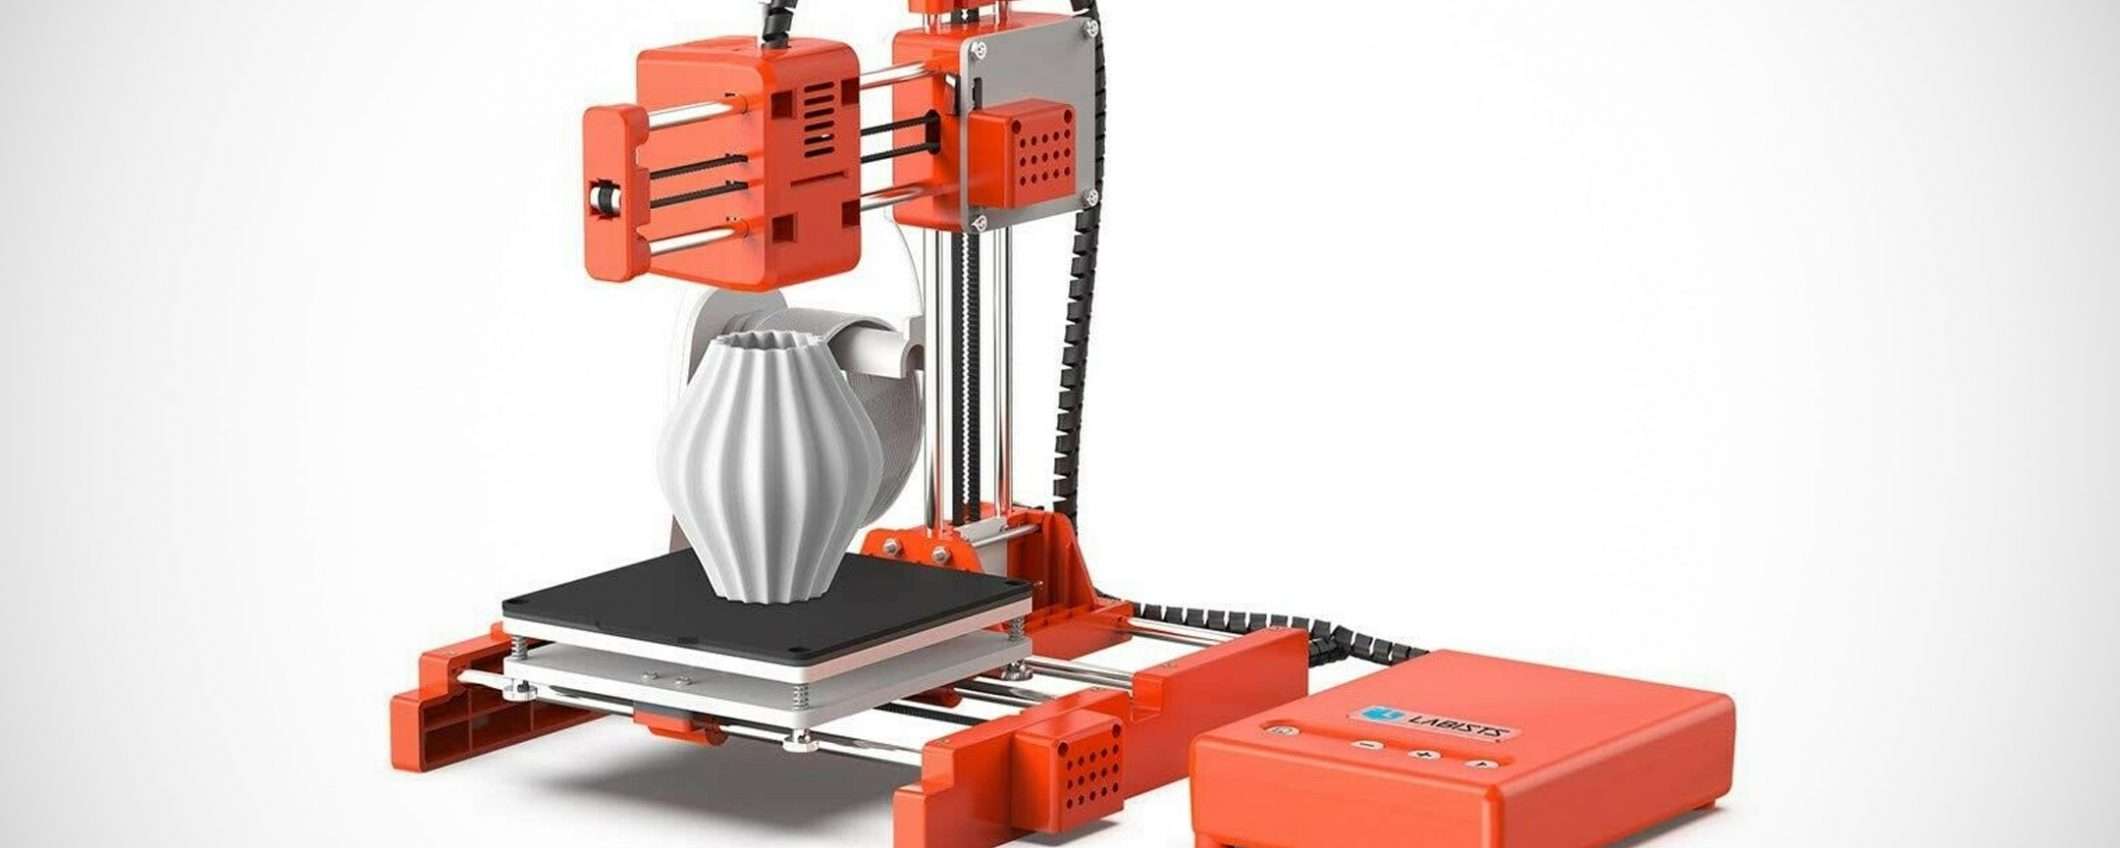 La tua prima stampante 3D oggi a 139 euro su eBay